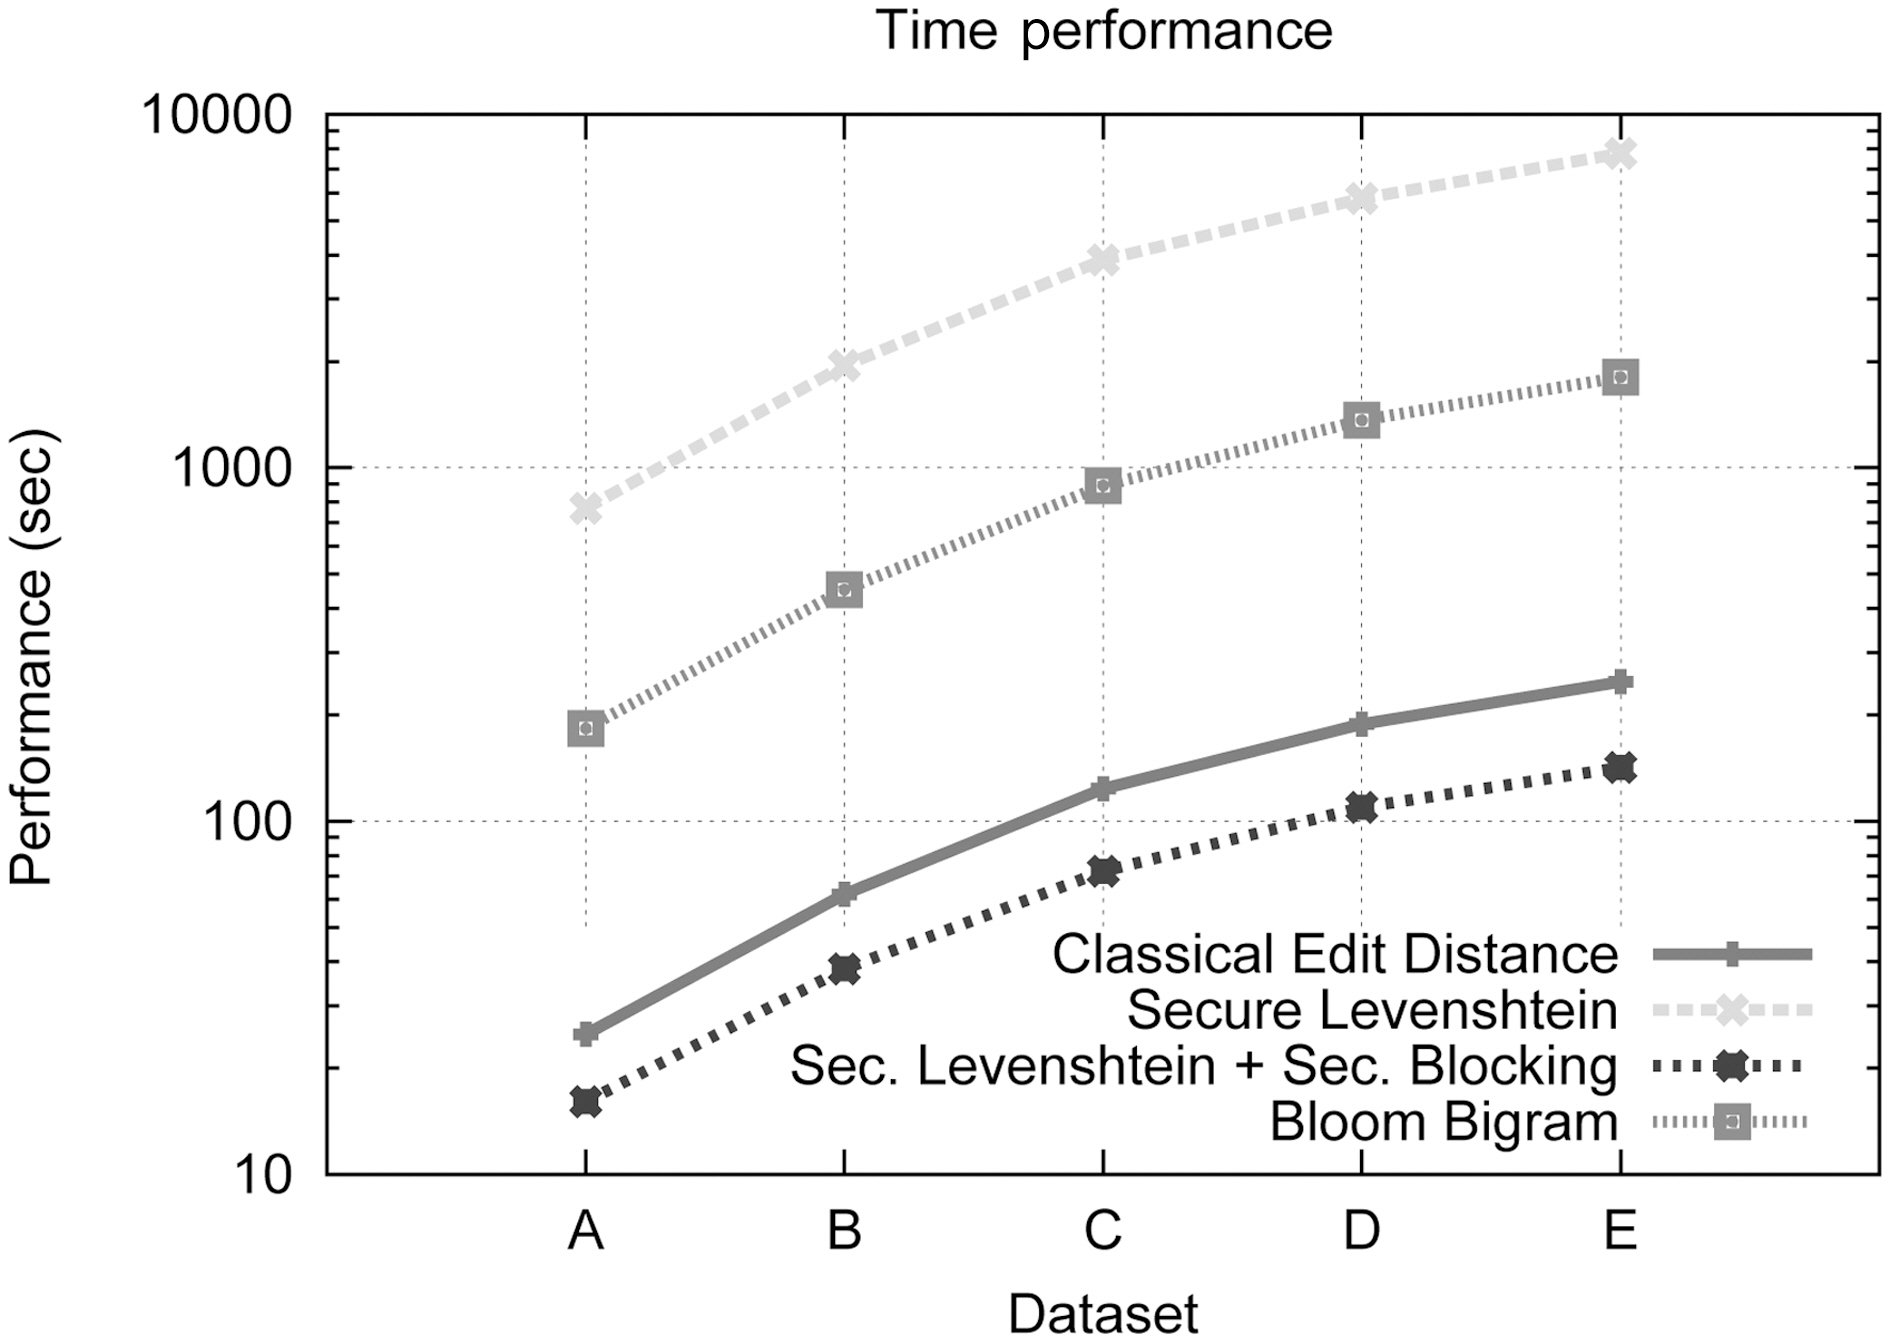 Time performance comparison.